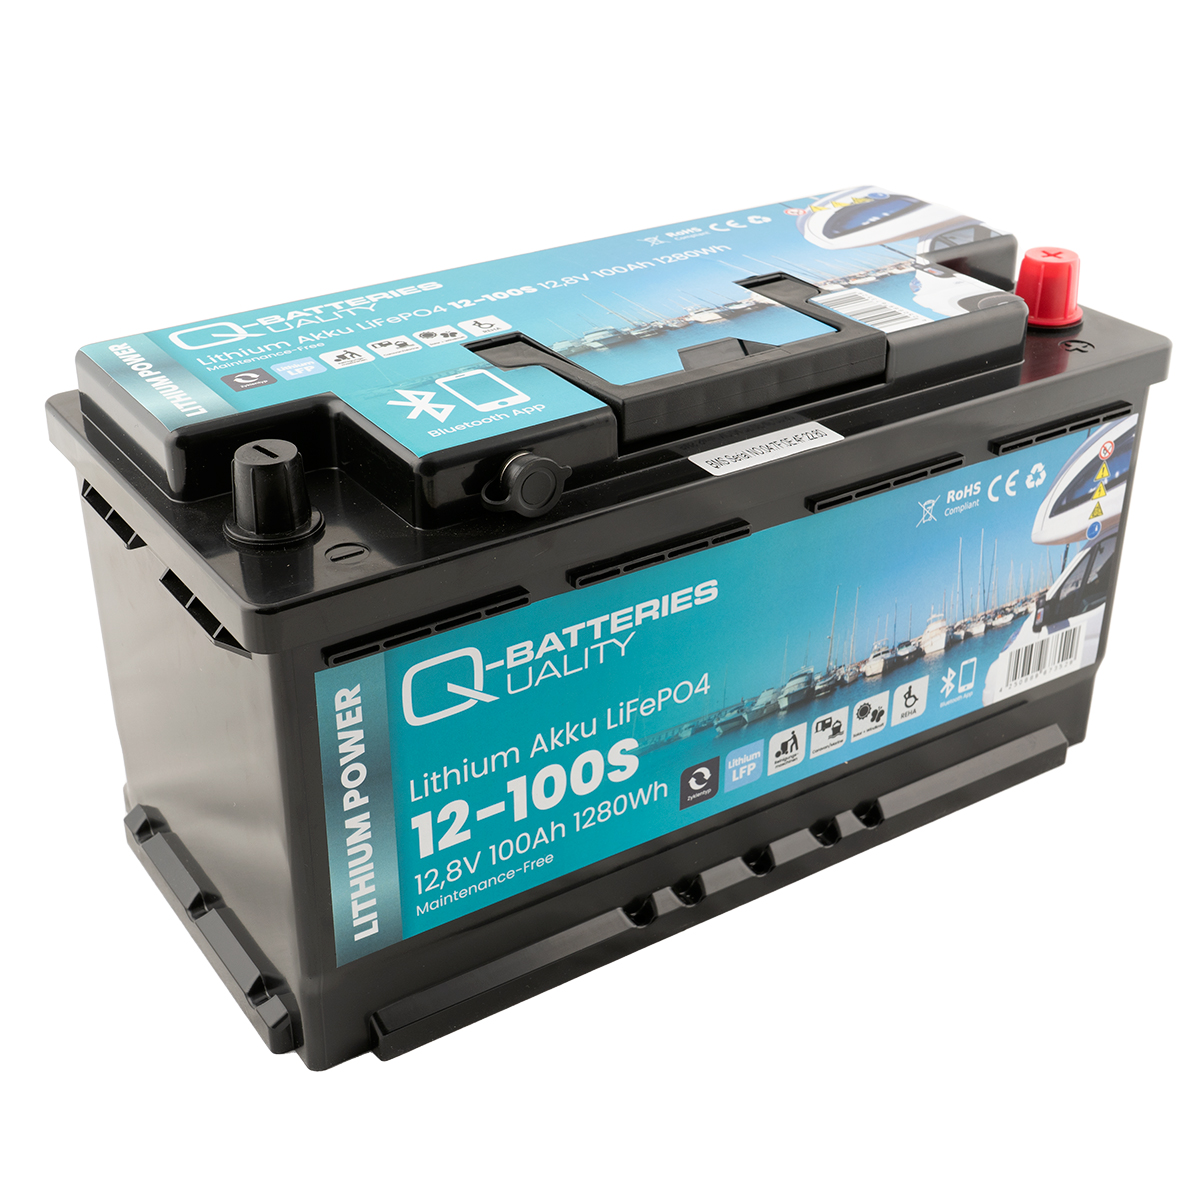 Q-Batteries Lithium Akku 12-12 12,8V 12Ah 153,6Wh LiFePO4 Lithium